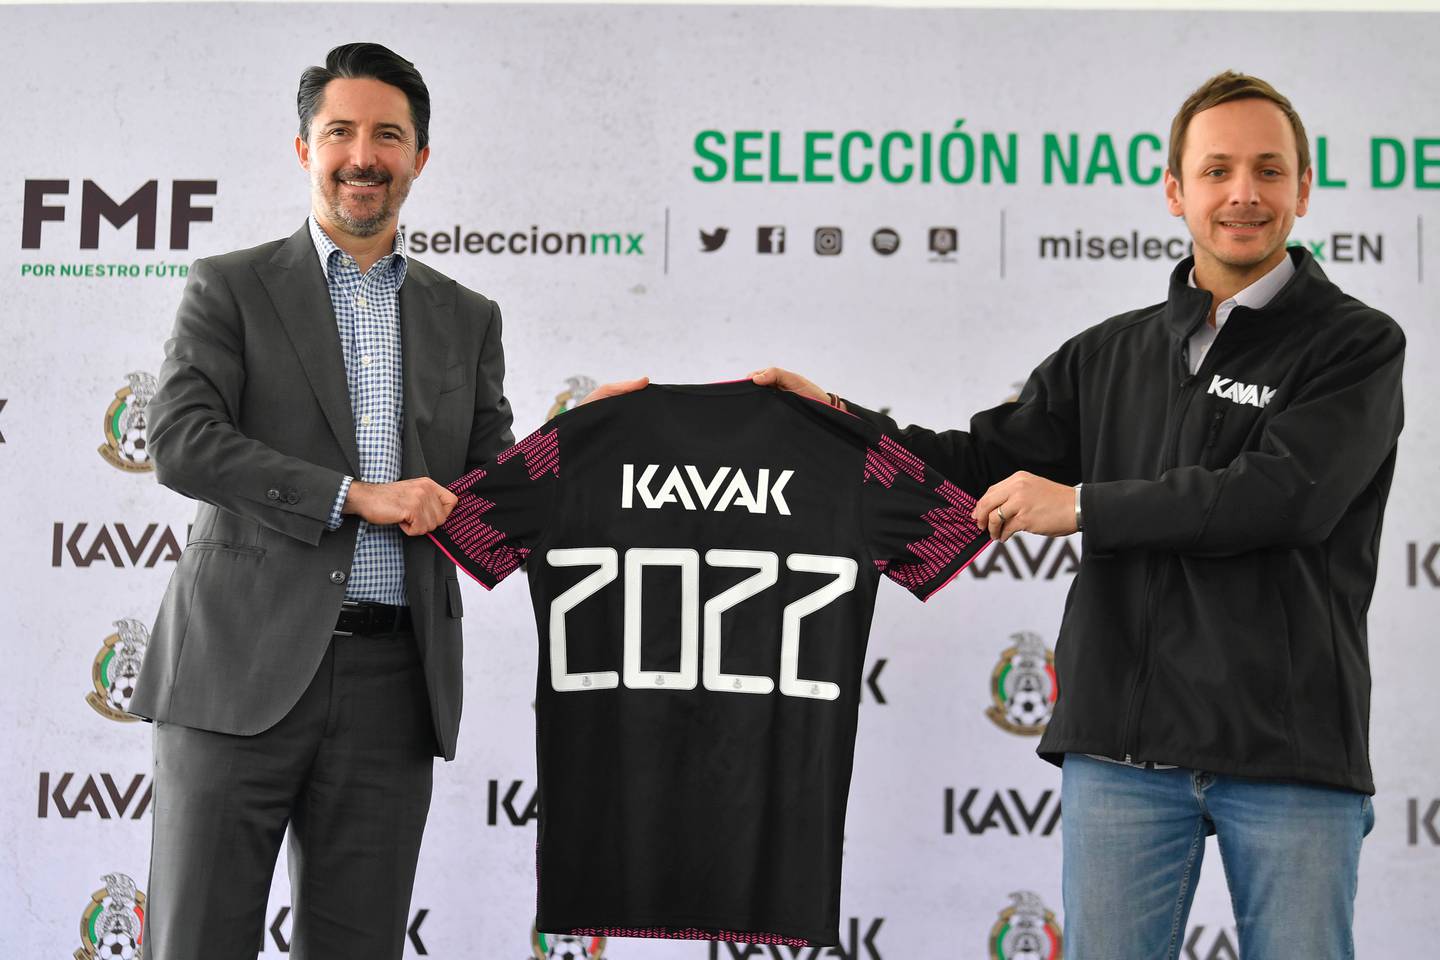 2022 será clave para la Selección Mexicana de Fútbol, también para los planes de expansión internacional de Kavak. Foto Kavak.